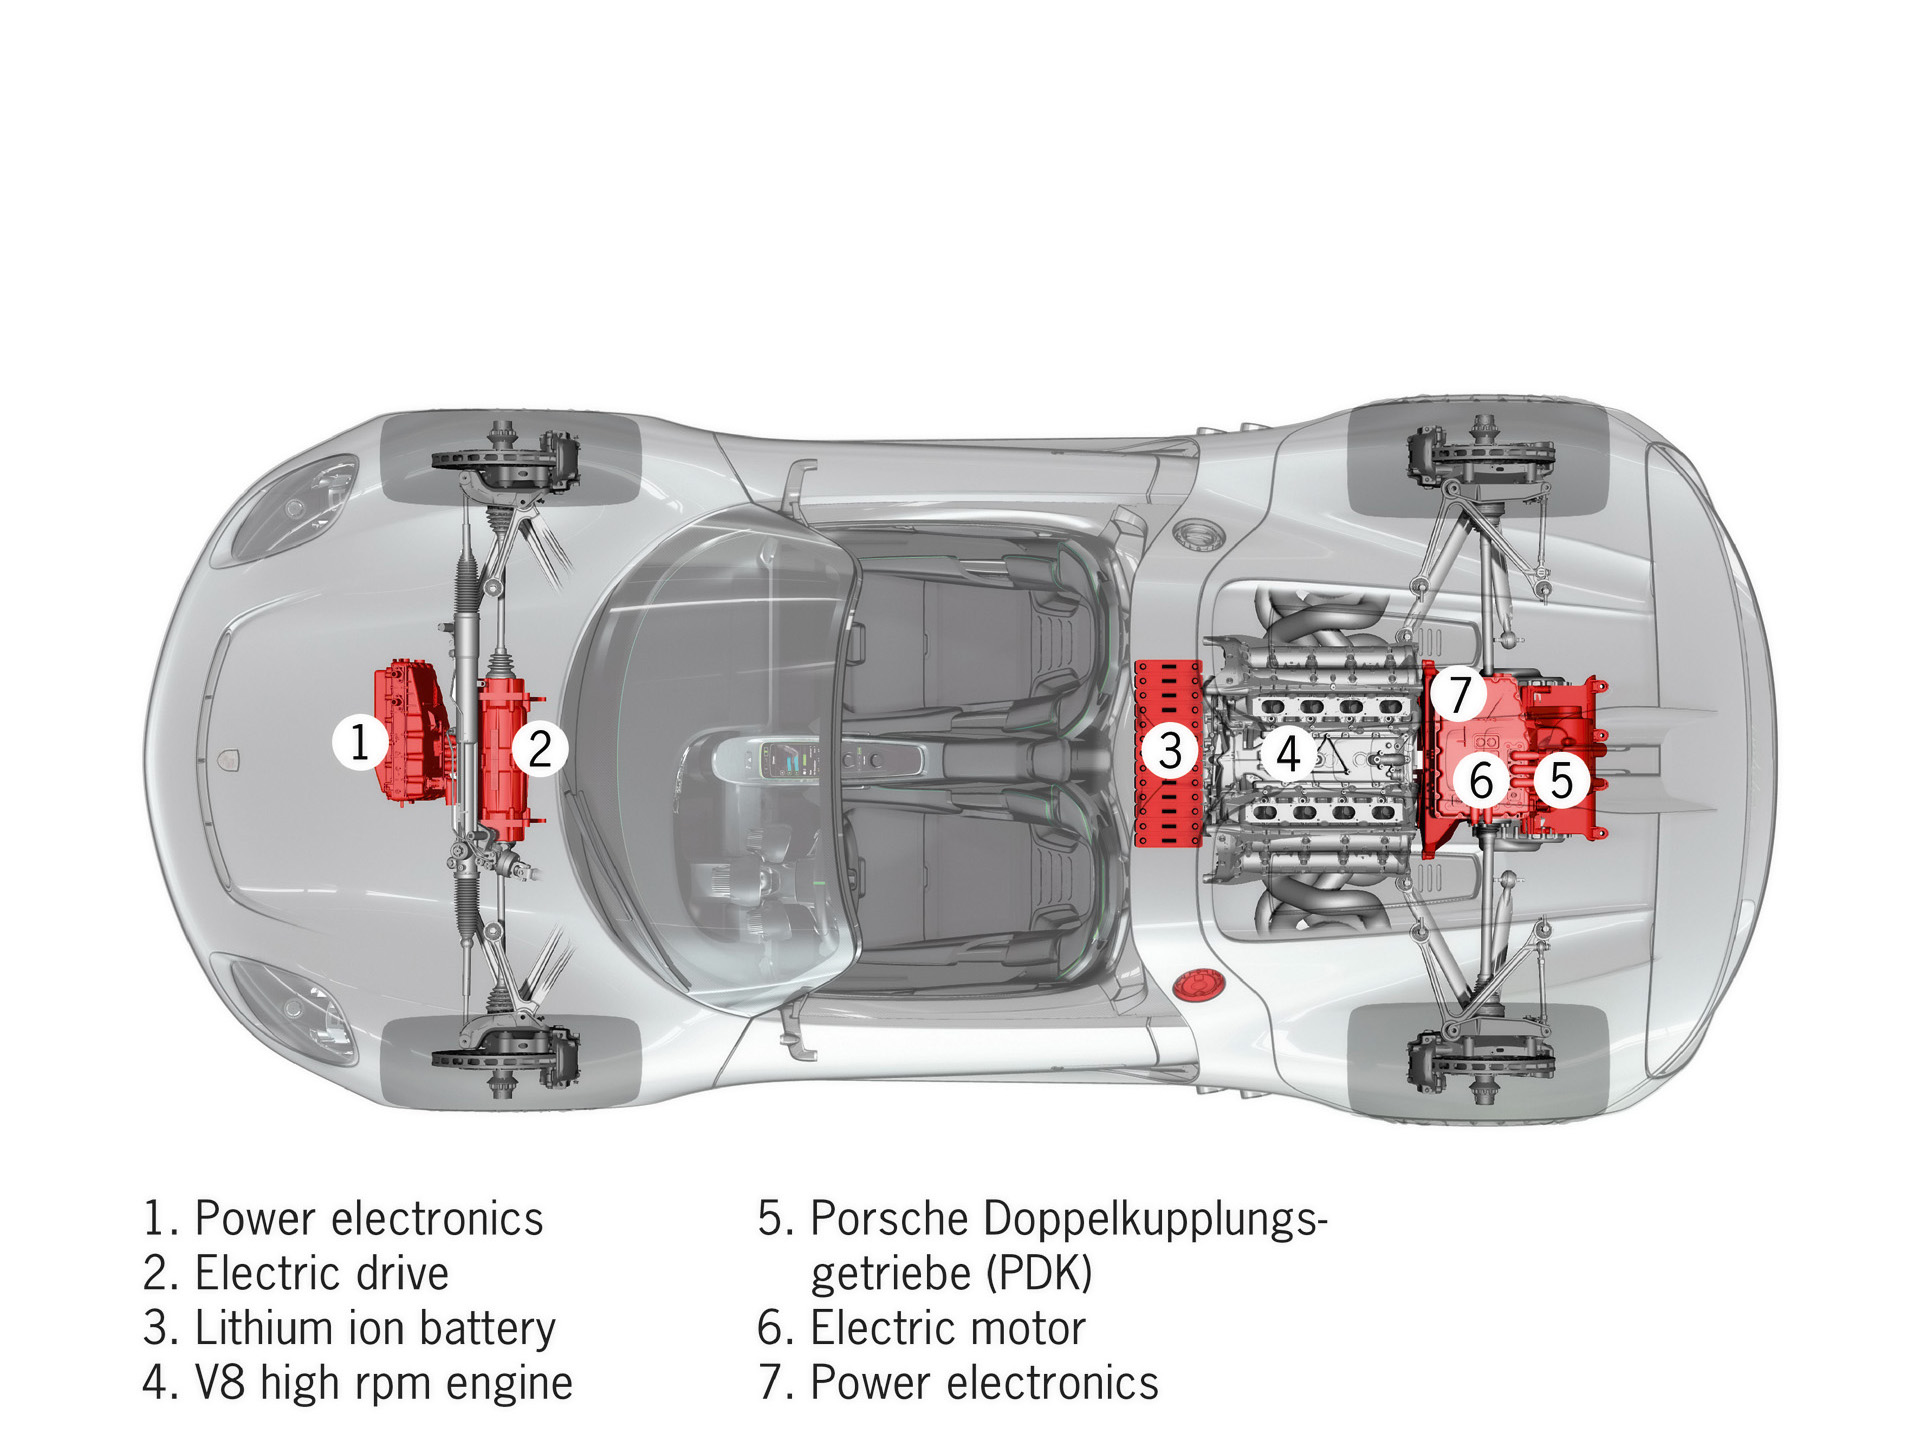 
Image Mcanique - Porsche 918 Spyder Concept (2010)
 